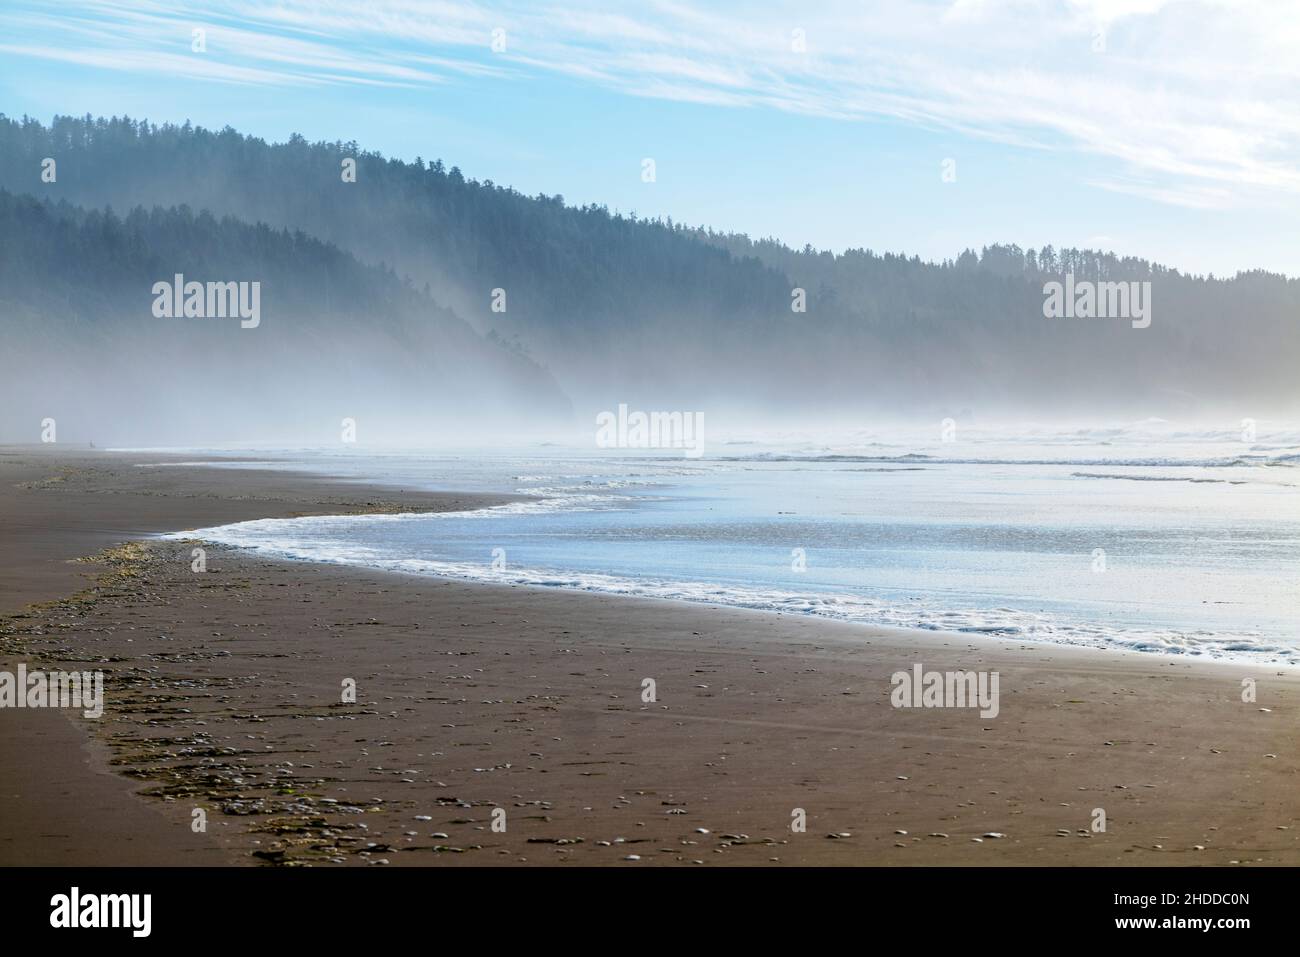 Océan; vagues; nuages; brume; parc national de Cape Lookout; océan Pacifique; côte de l'Oregon; États-Unis Banque D'Images